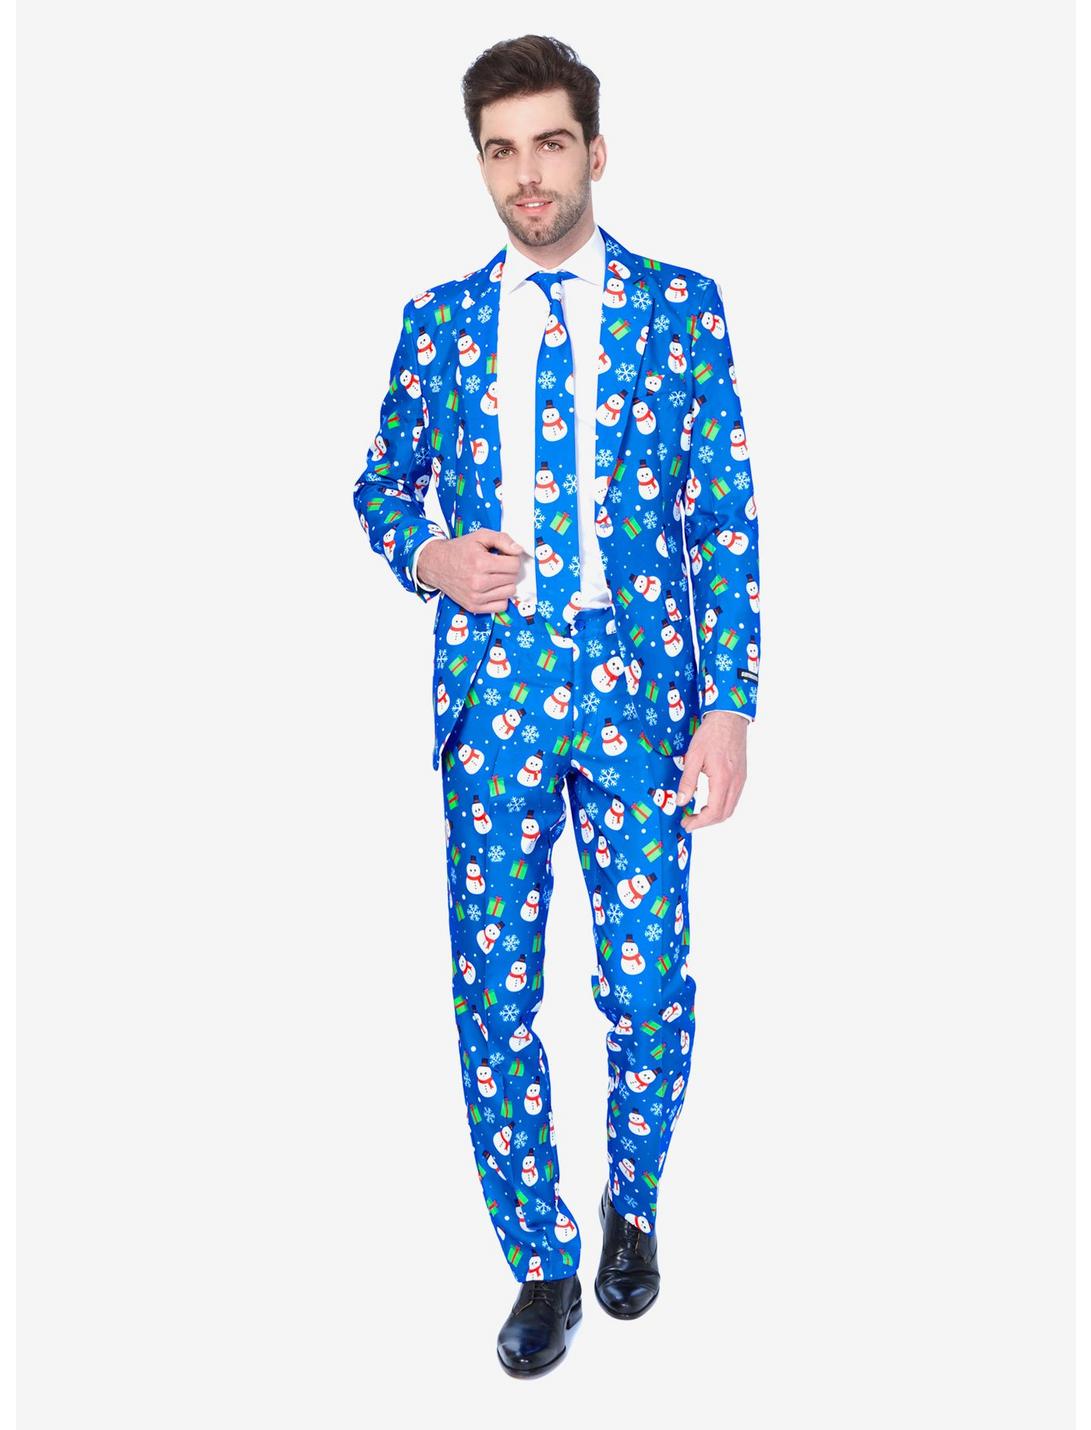 Suitmeister Men's Christmas Blue Snowman Christmas Suit, BLUE, hi-res